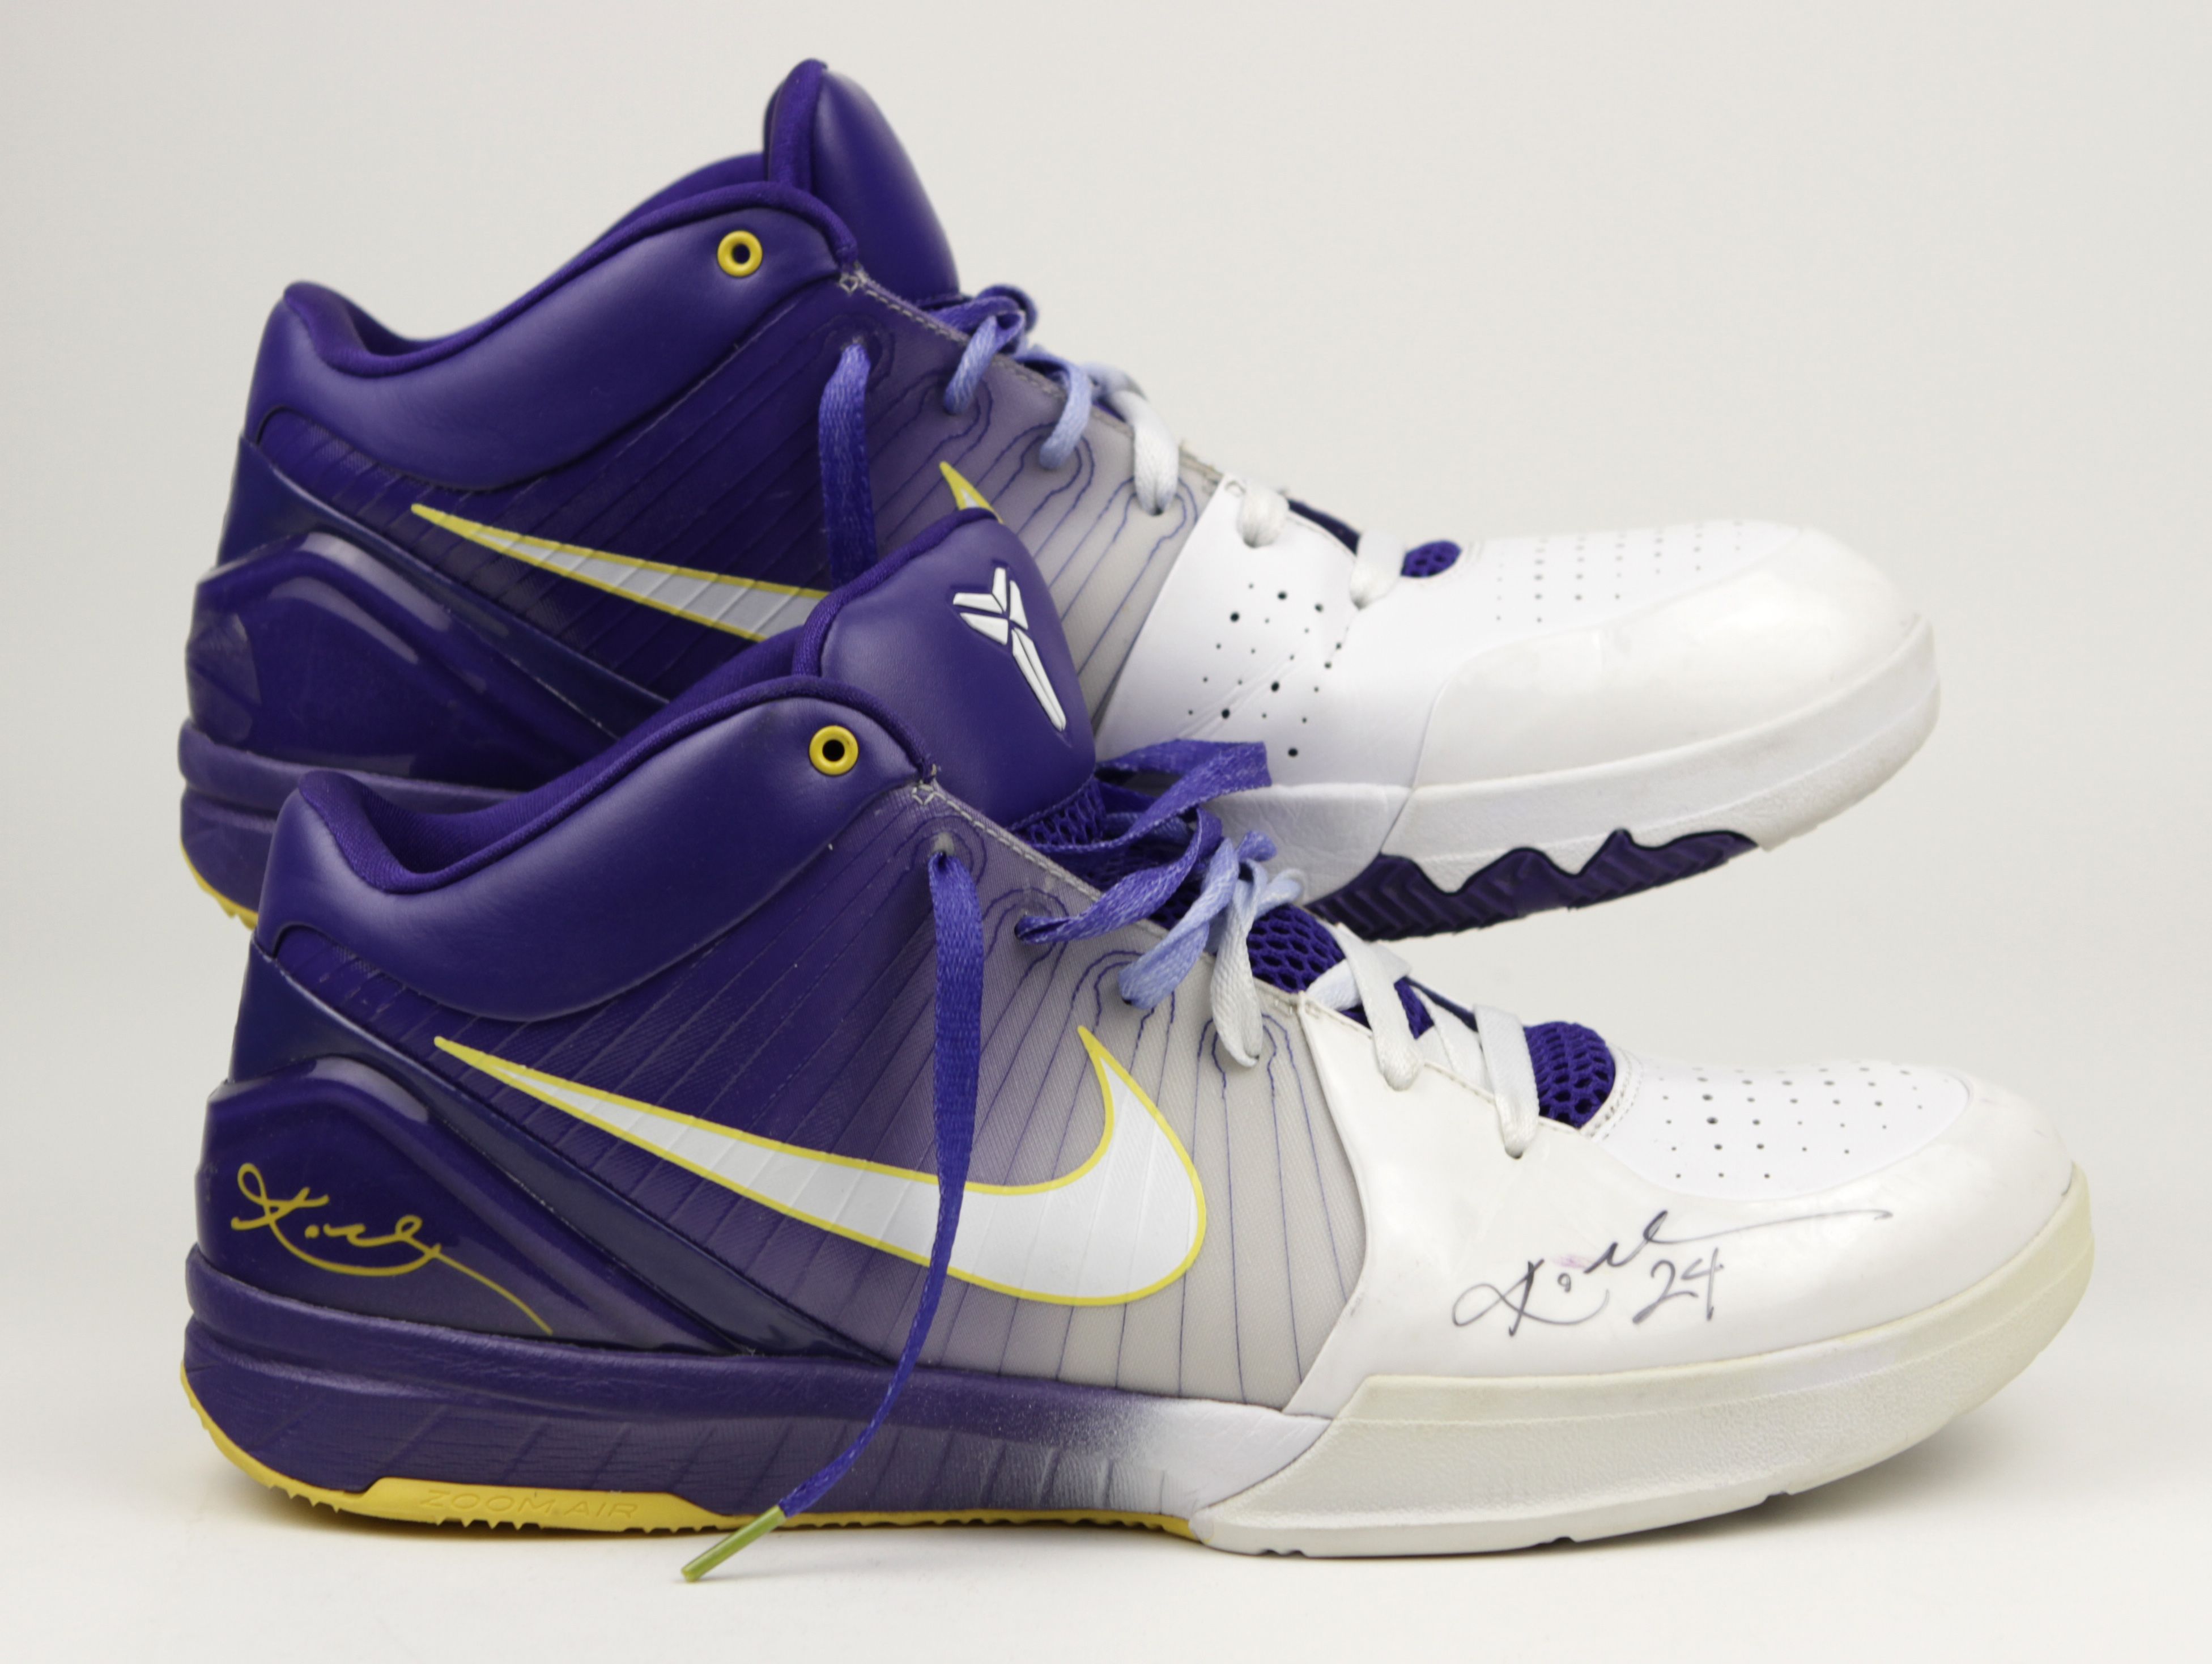 Kobe Bryant Los Angeles Lakers Signed Game Worn Sneakers